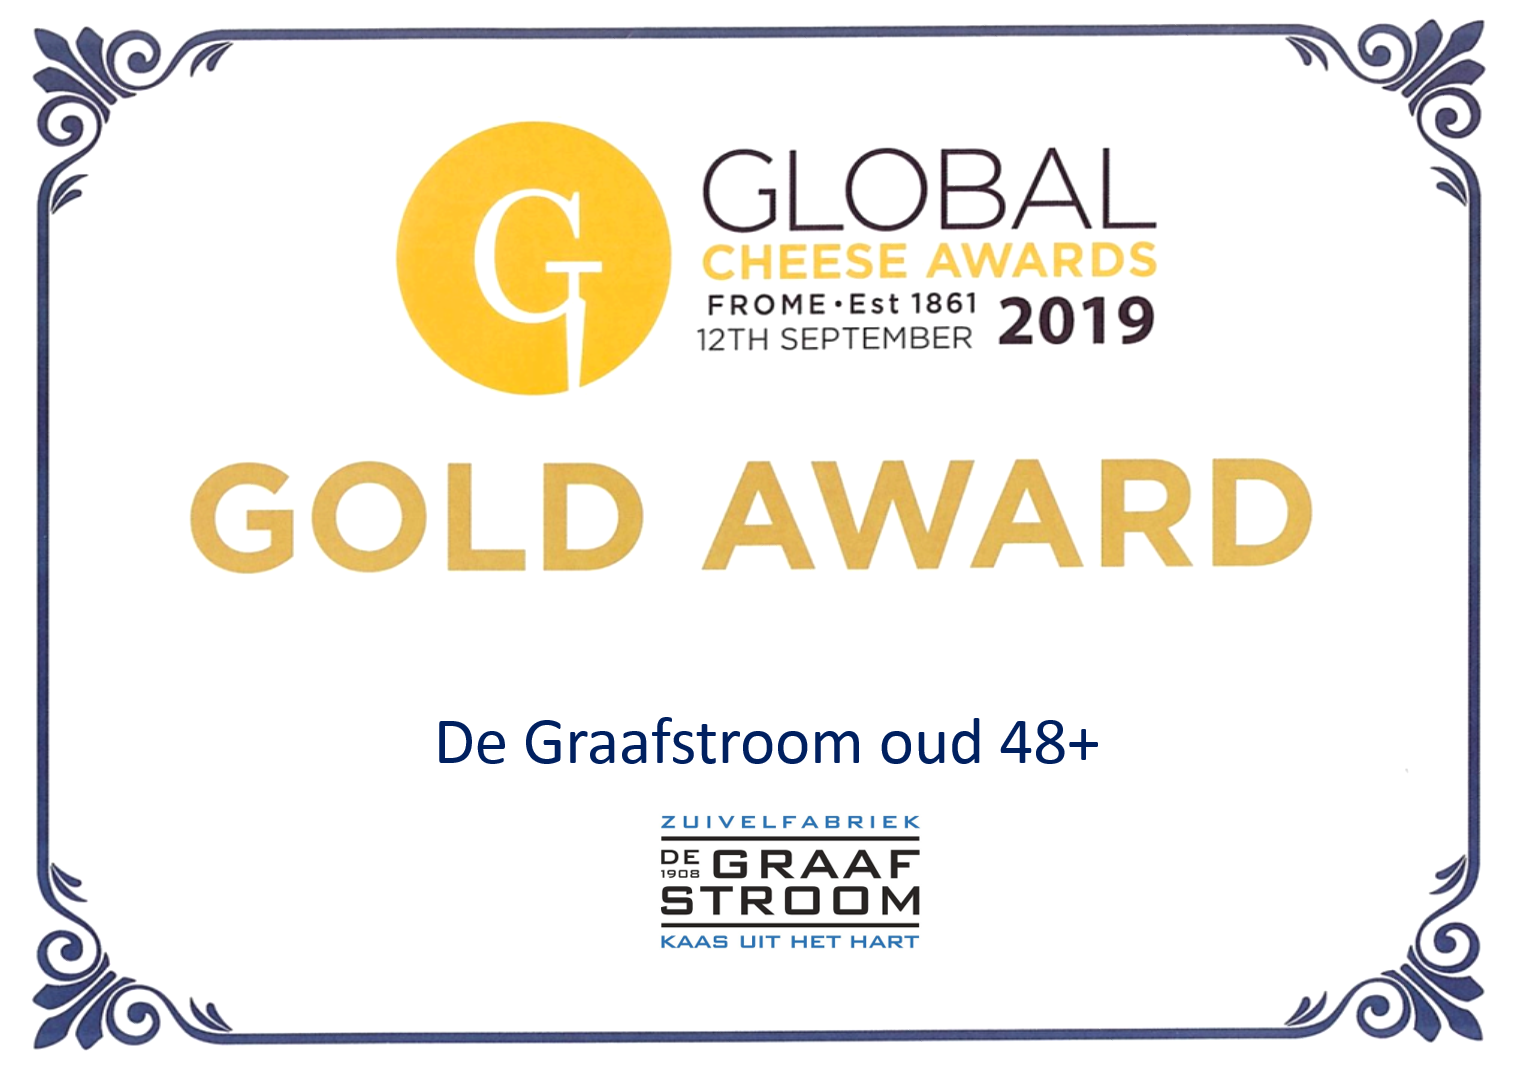 Global Cheese Awards 2019: De Graafstroom voor de derde keer op rij de beste Nederlandse kaas!